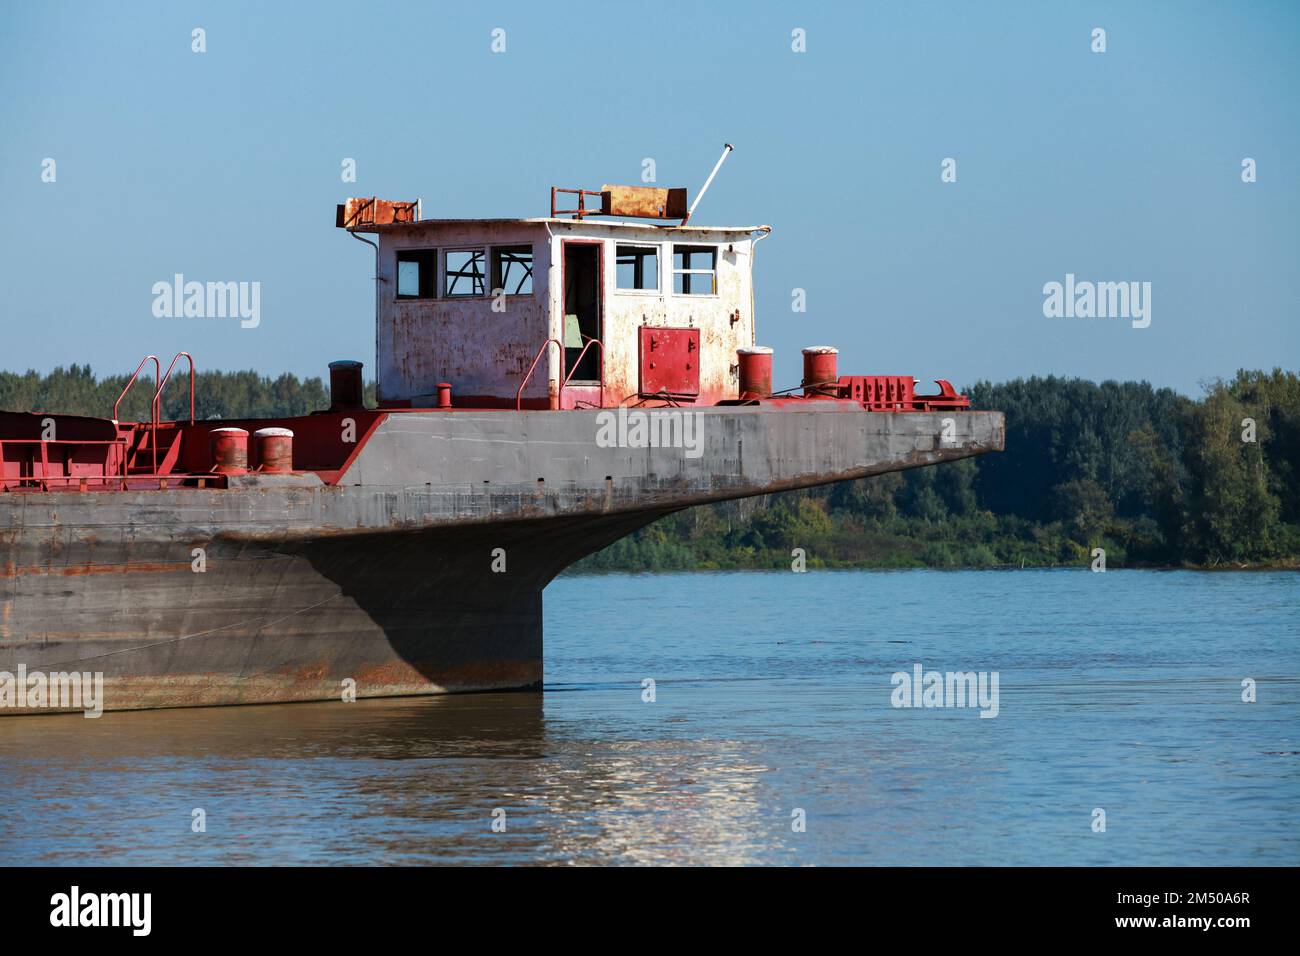 La superstructure de la Péniche moderne au Danube par une journée ensoleillée. Ruse, Bulgarie Banque D'Images